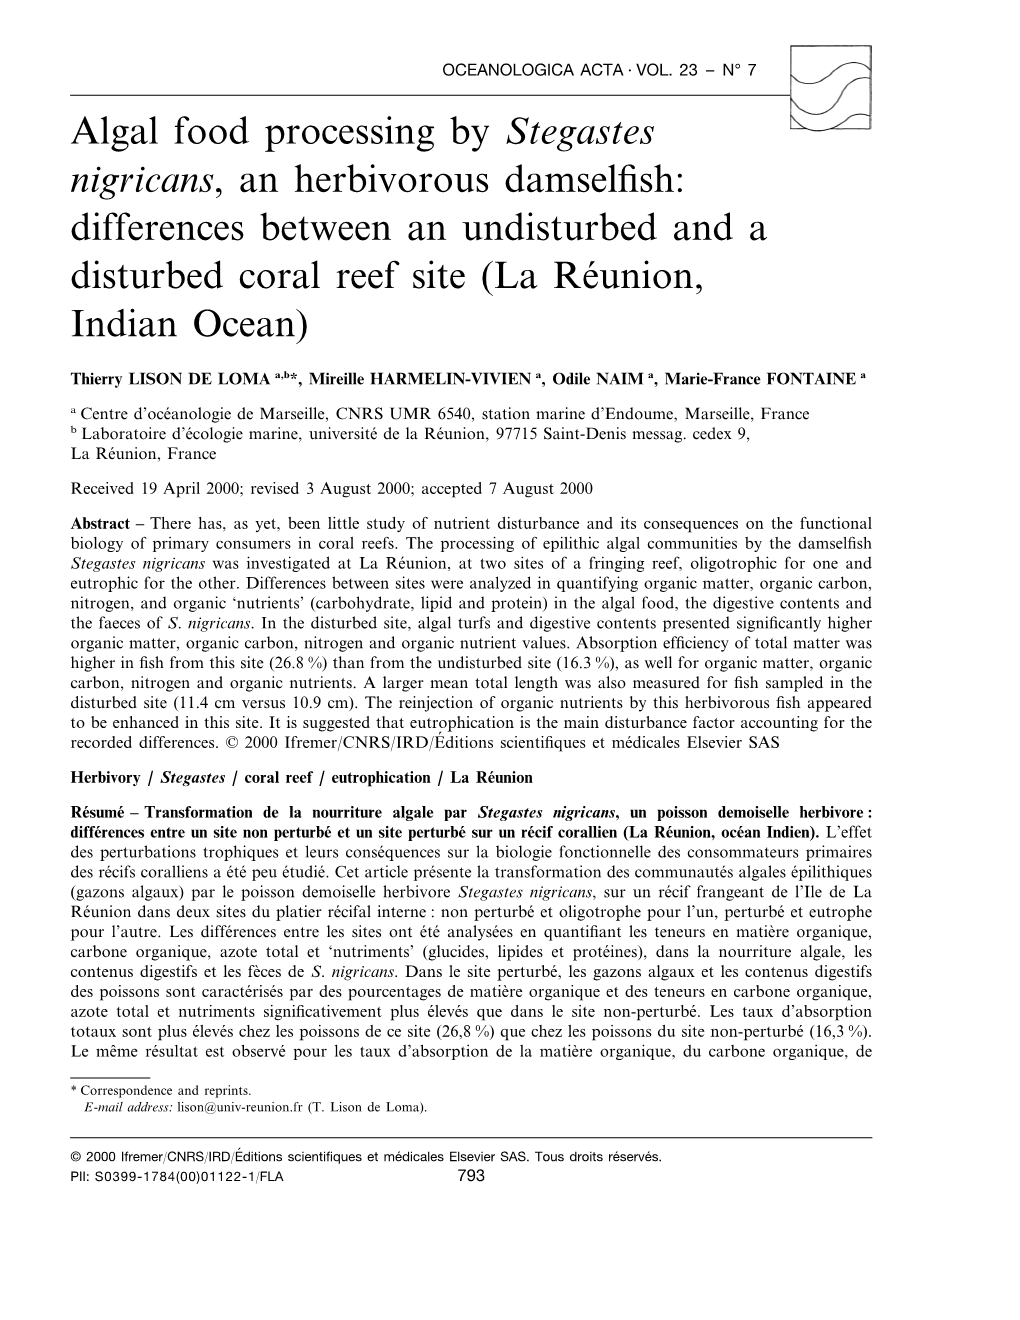 Algal Food Processing by Stegastes Nigricans, an Herbivorous Damselfish